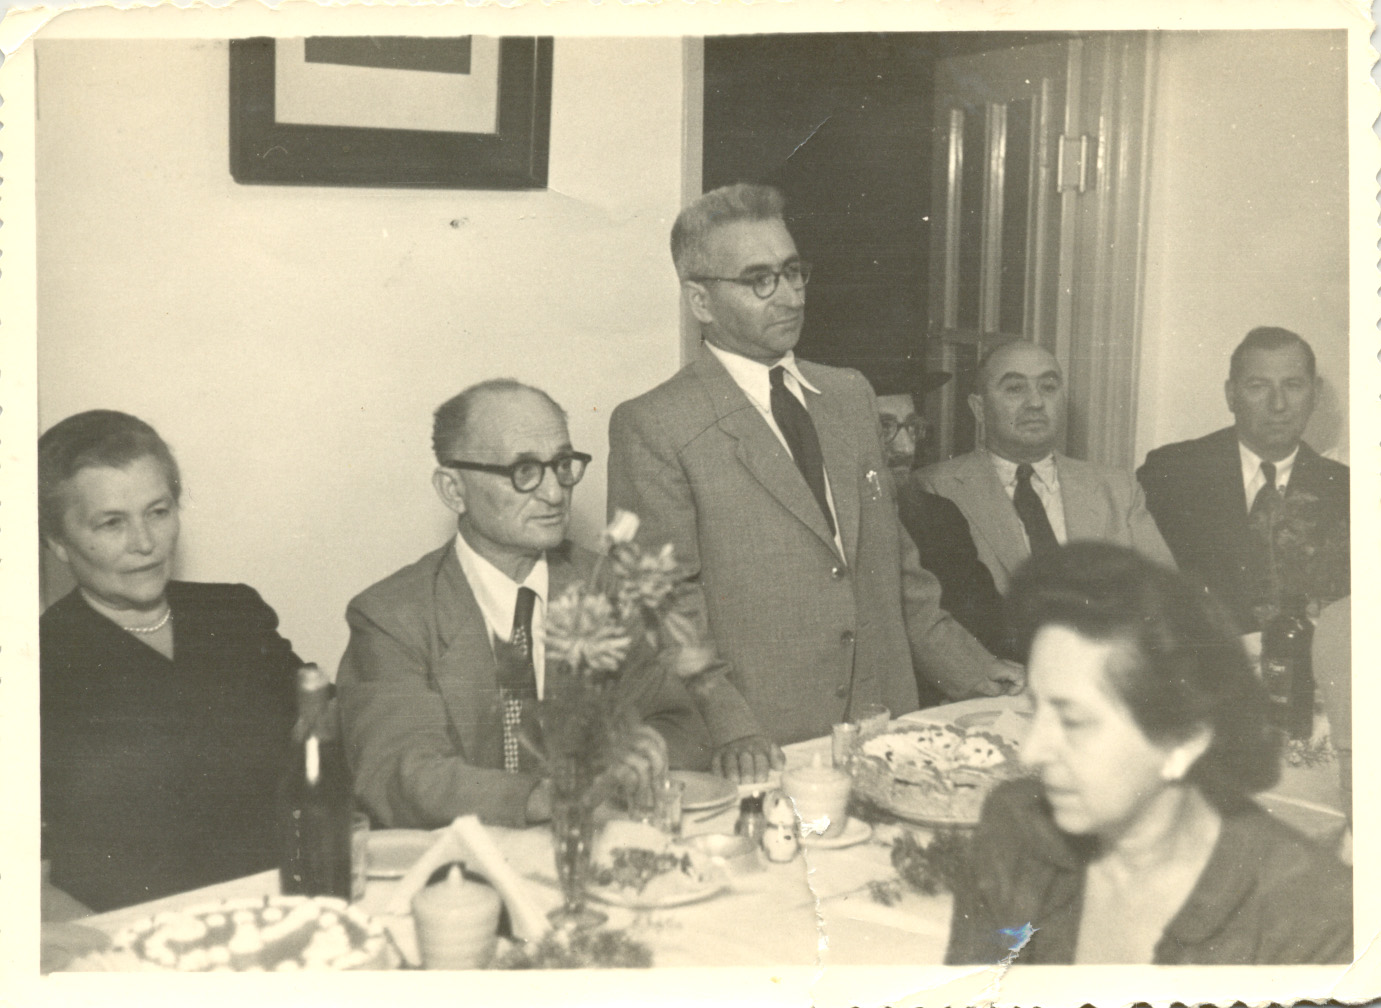 פגישת אנשי הציבור במלון "פיתוח" רעננה בשנות ה-50.  משמאל פייגה אוסטרובסקי, ברוך אוסטרובסקי, ברוך ברוידא, הרב סוקולובר וצבי לבהרי. 